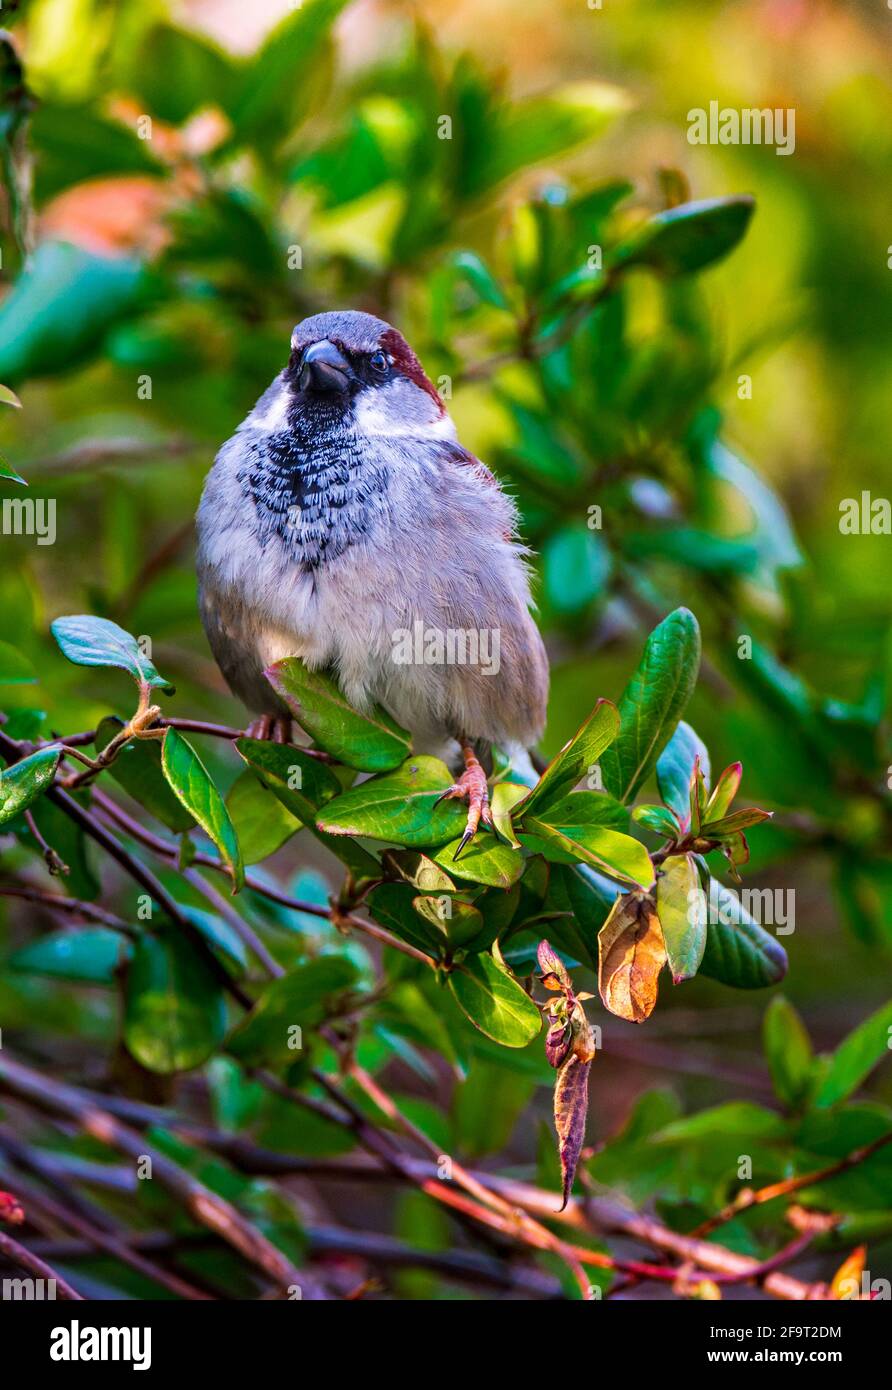 Ein männlicher Haussparrow (Passer domesticus) Ein gewöhnlicher Gartenvögel, der in einem grünen Busch sitzt Stockfoto